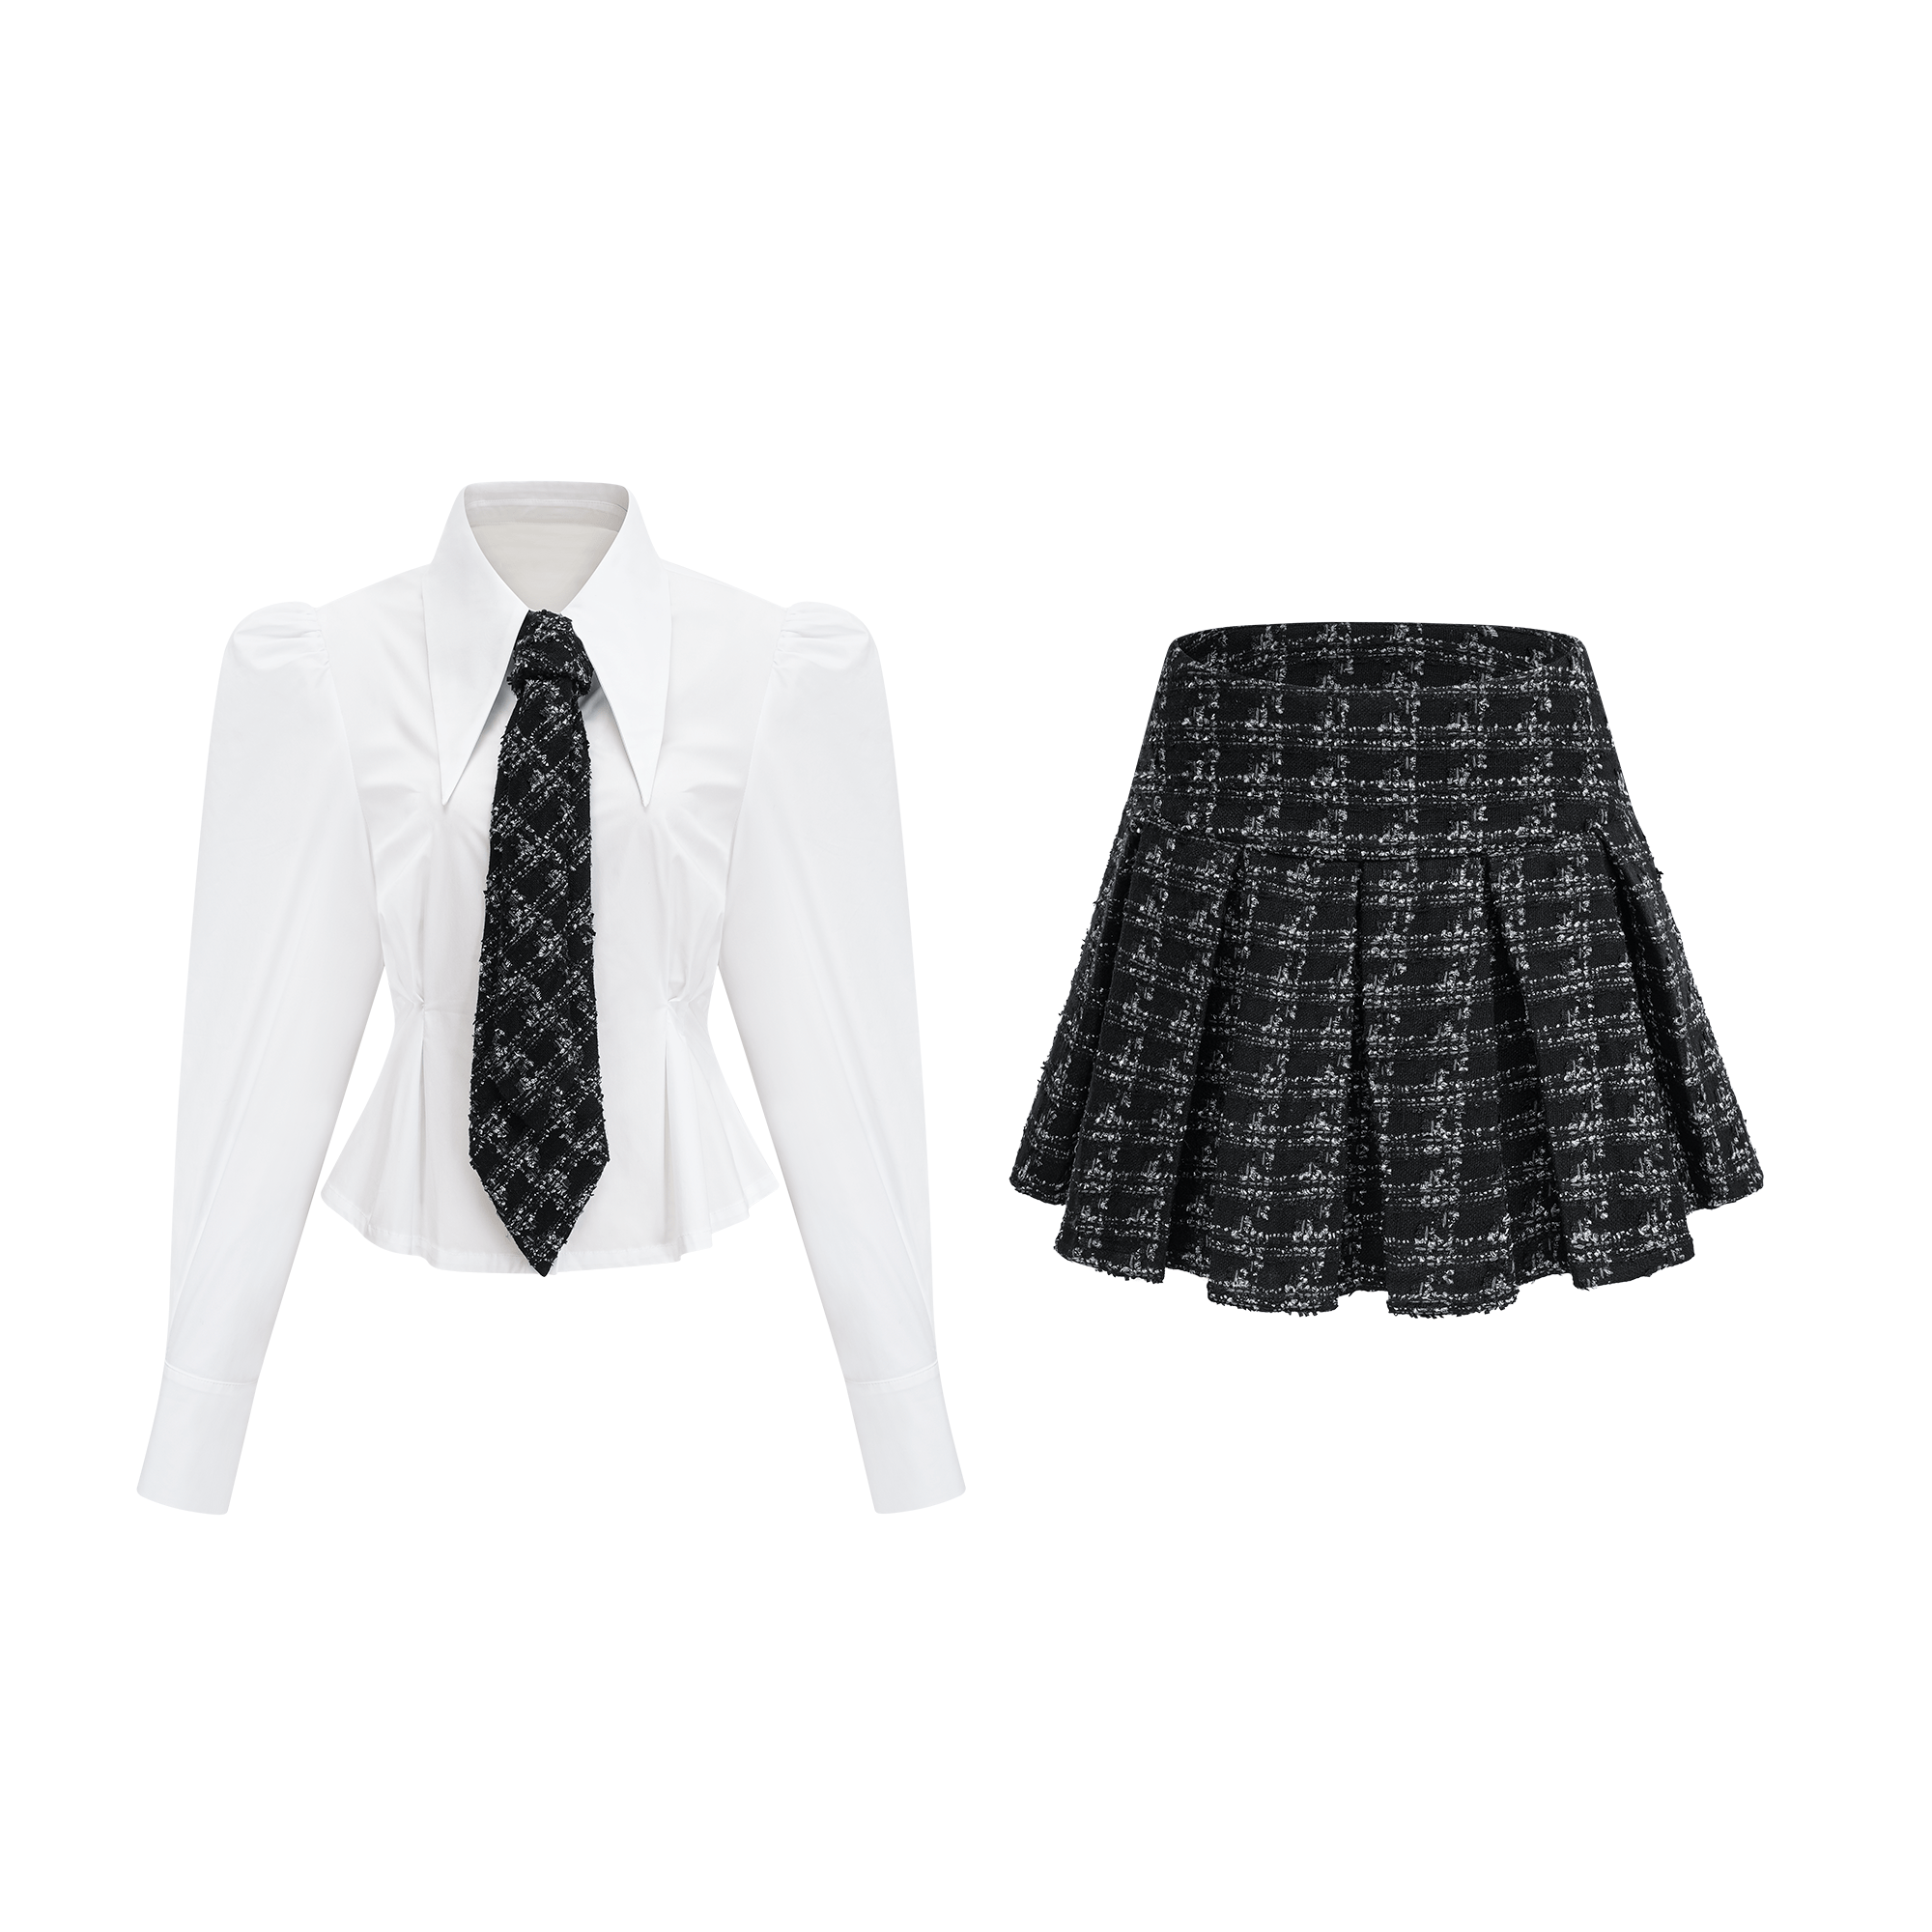 Mireille shirt & skirt matching set - Miss Rosier - Women's Online Boutique